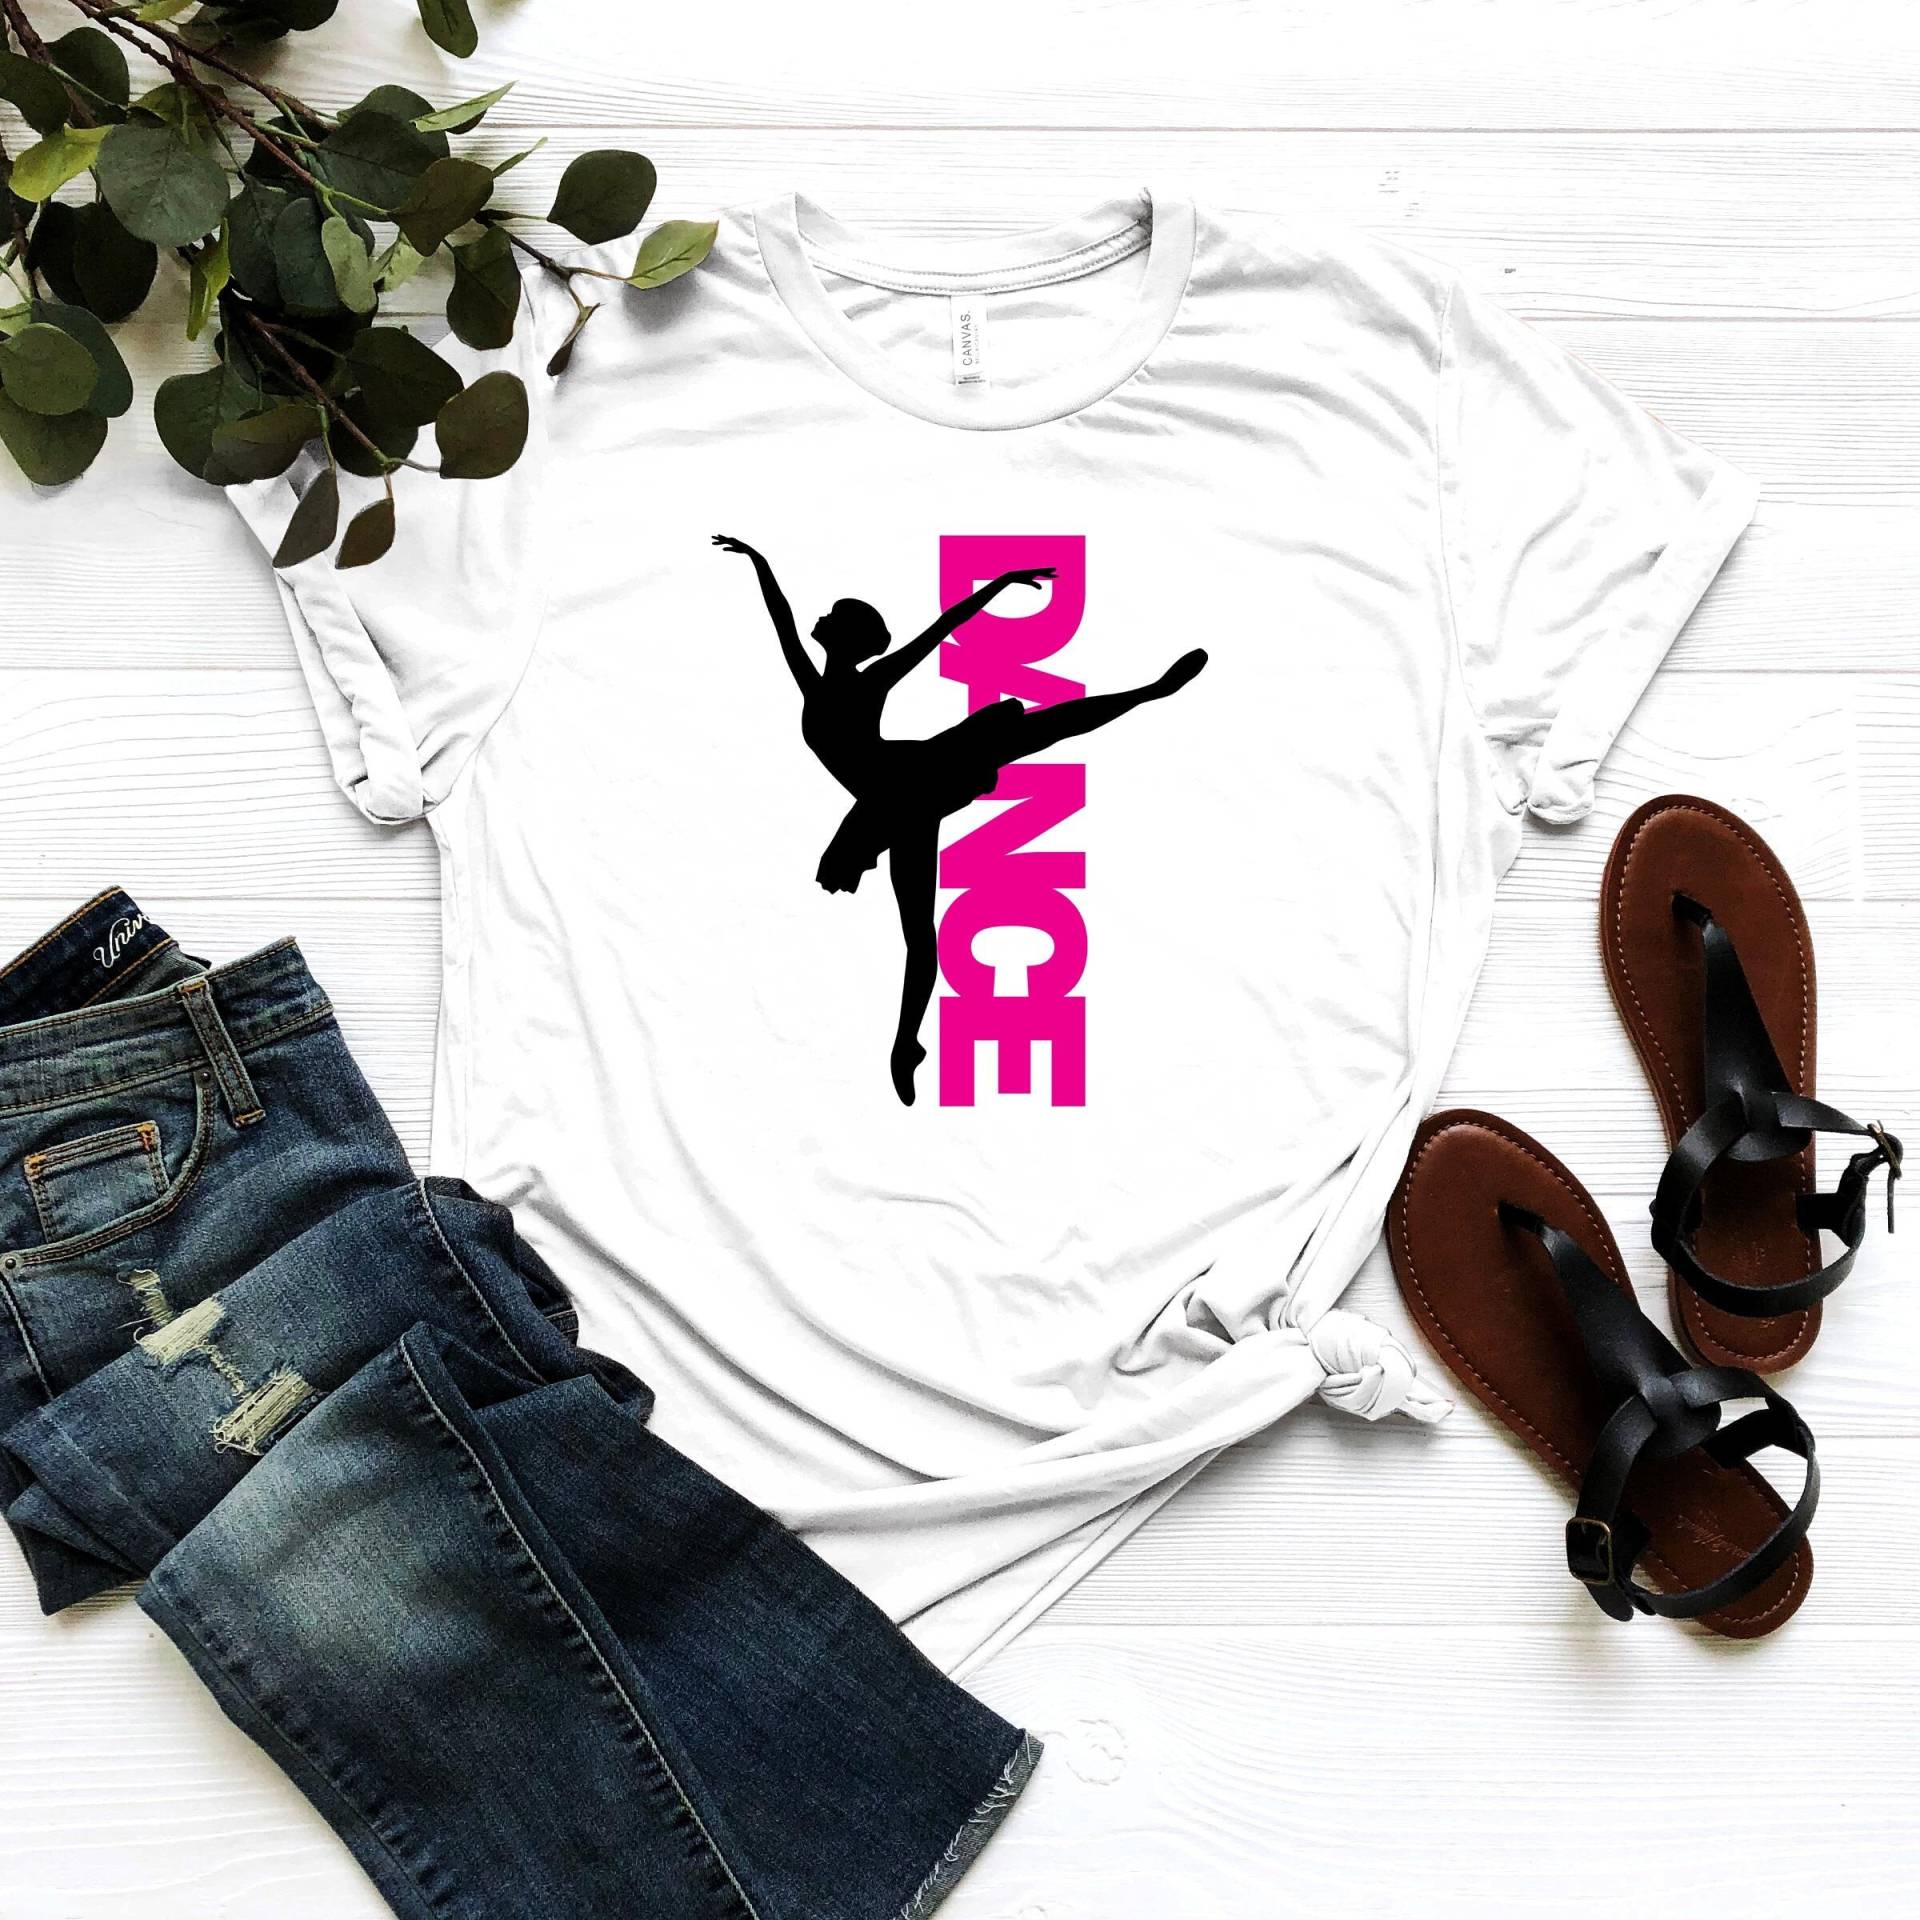 Ballett-Tänzerin-Shirt - Tanz-Crew-Geschenk Ballerina-Kleidung Tanzliebhaber-Bekleidung Tänzerin-Mädchen-T-Shirt Tanzteam-T-Shirt Tanzbegeisterte von CustomixDesign